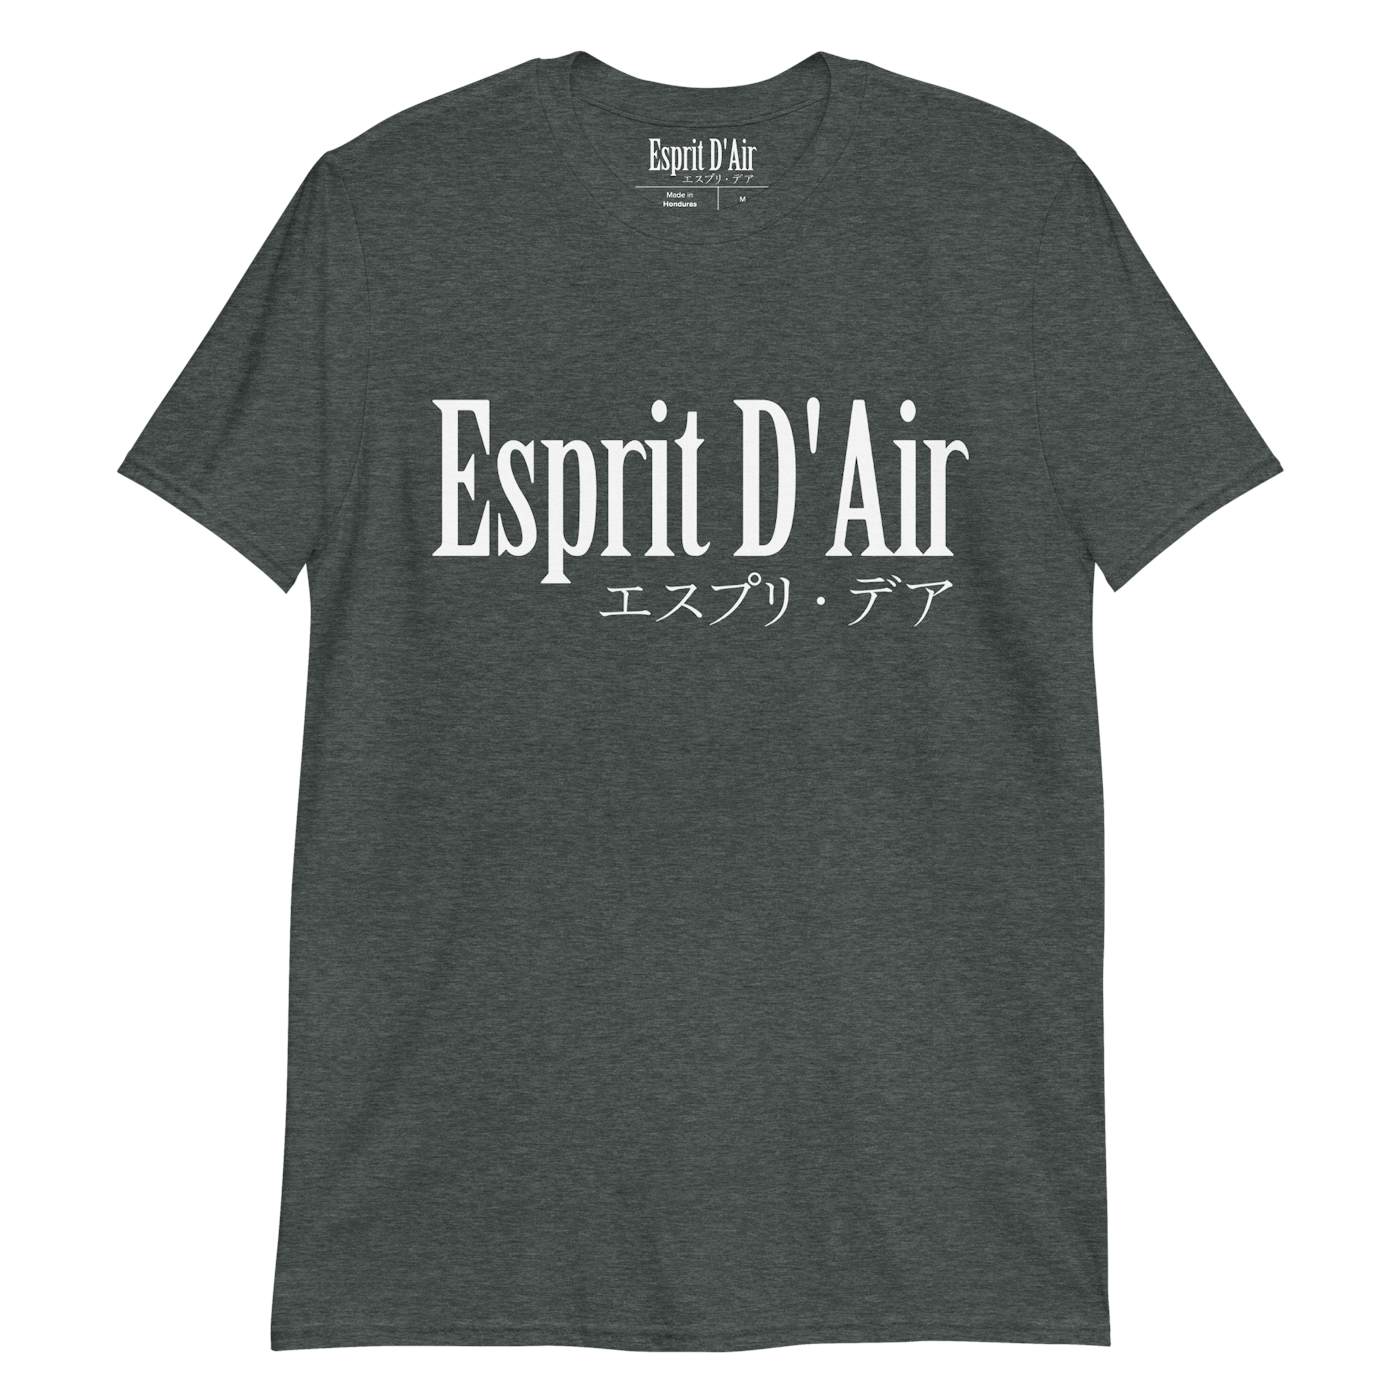 Esprit D'Air Katakana Logo T-Shirt